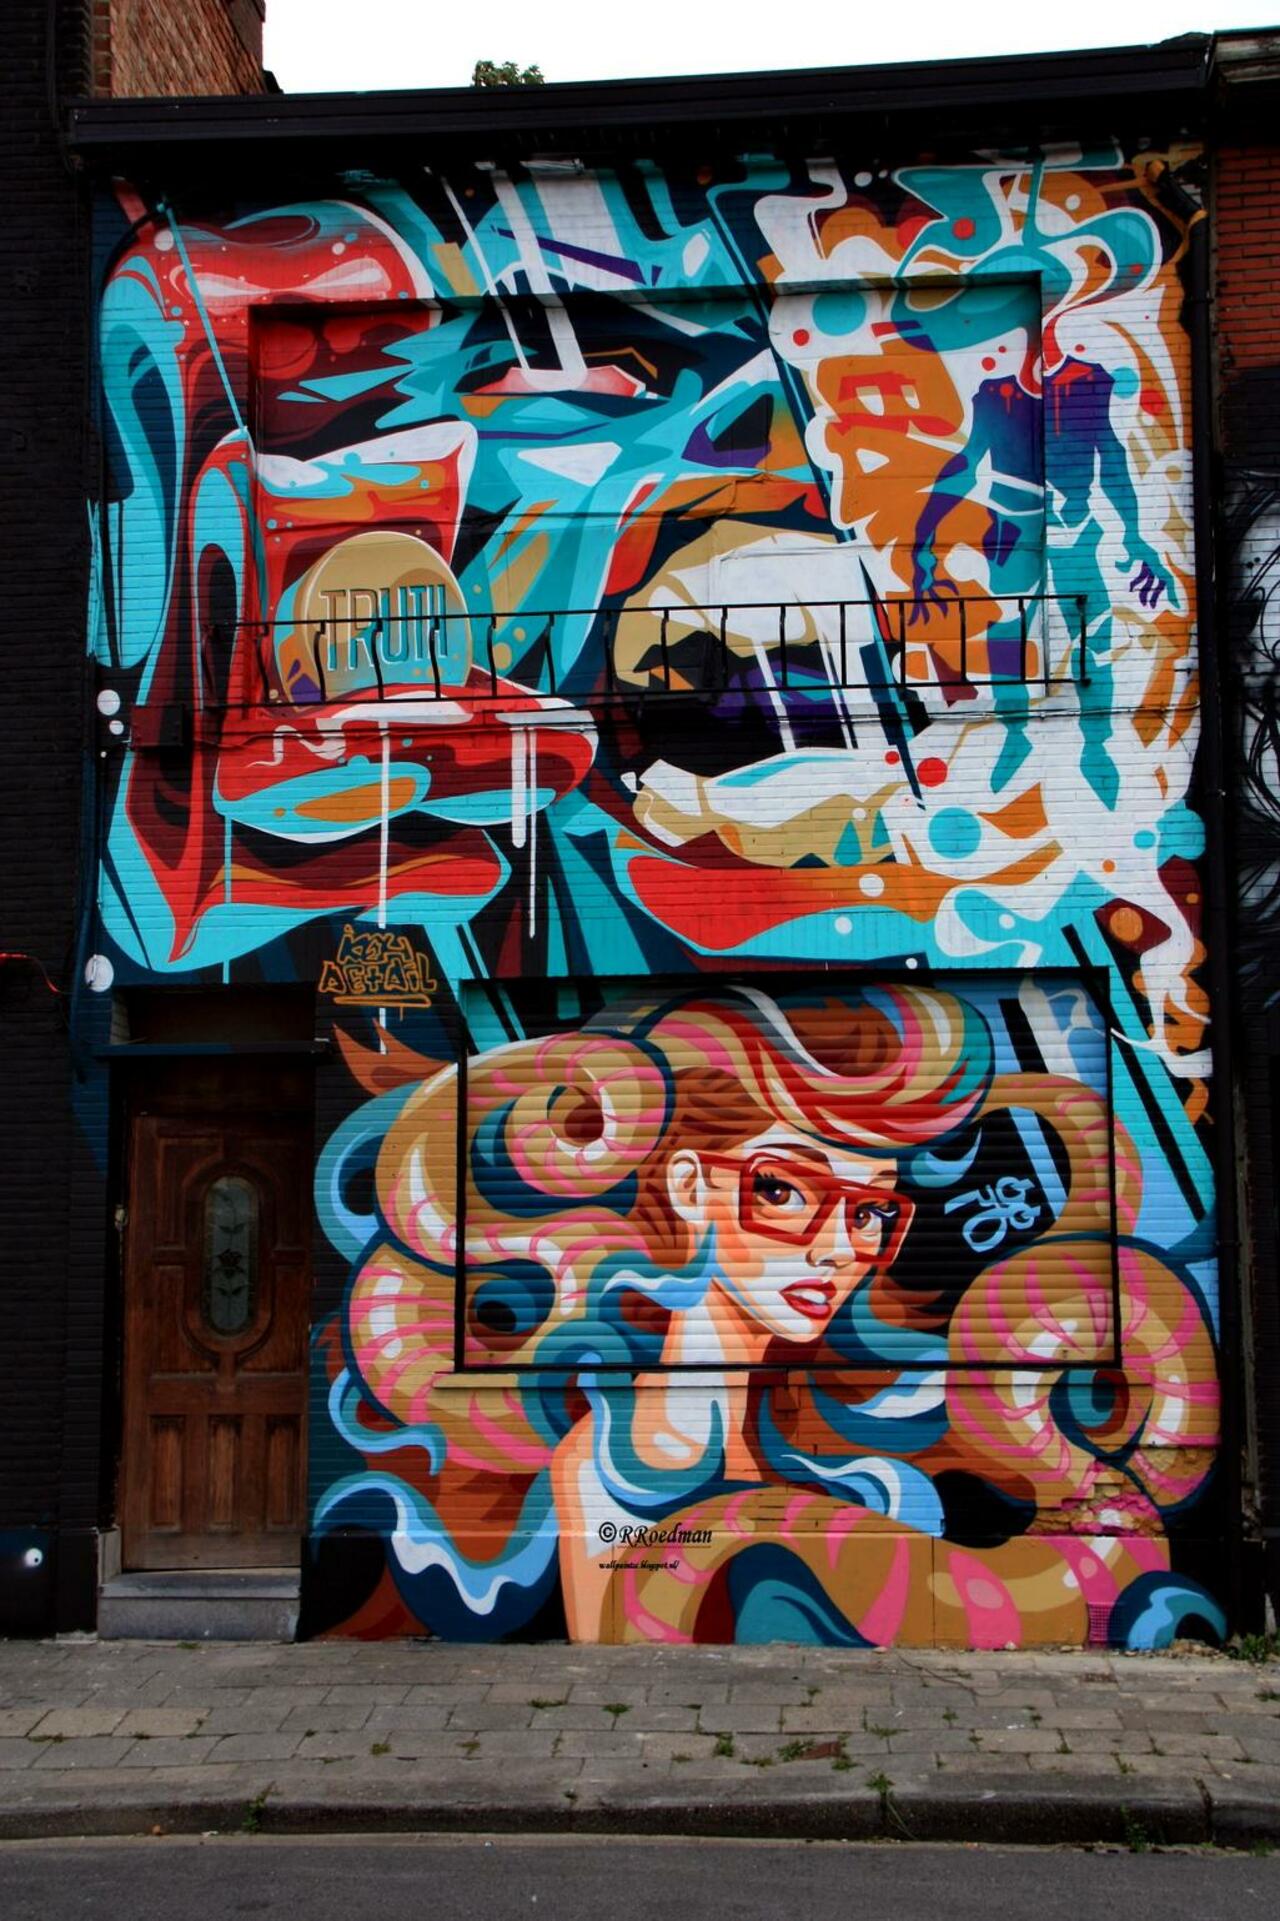 RT @RRoedman: #streetart #graffiti #mural girl with colored hair #Berchem #Antwerpen,2 pics at http://wallpaintss.blogspot.nl http://t.co/UN7vAkvMba